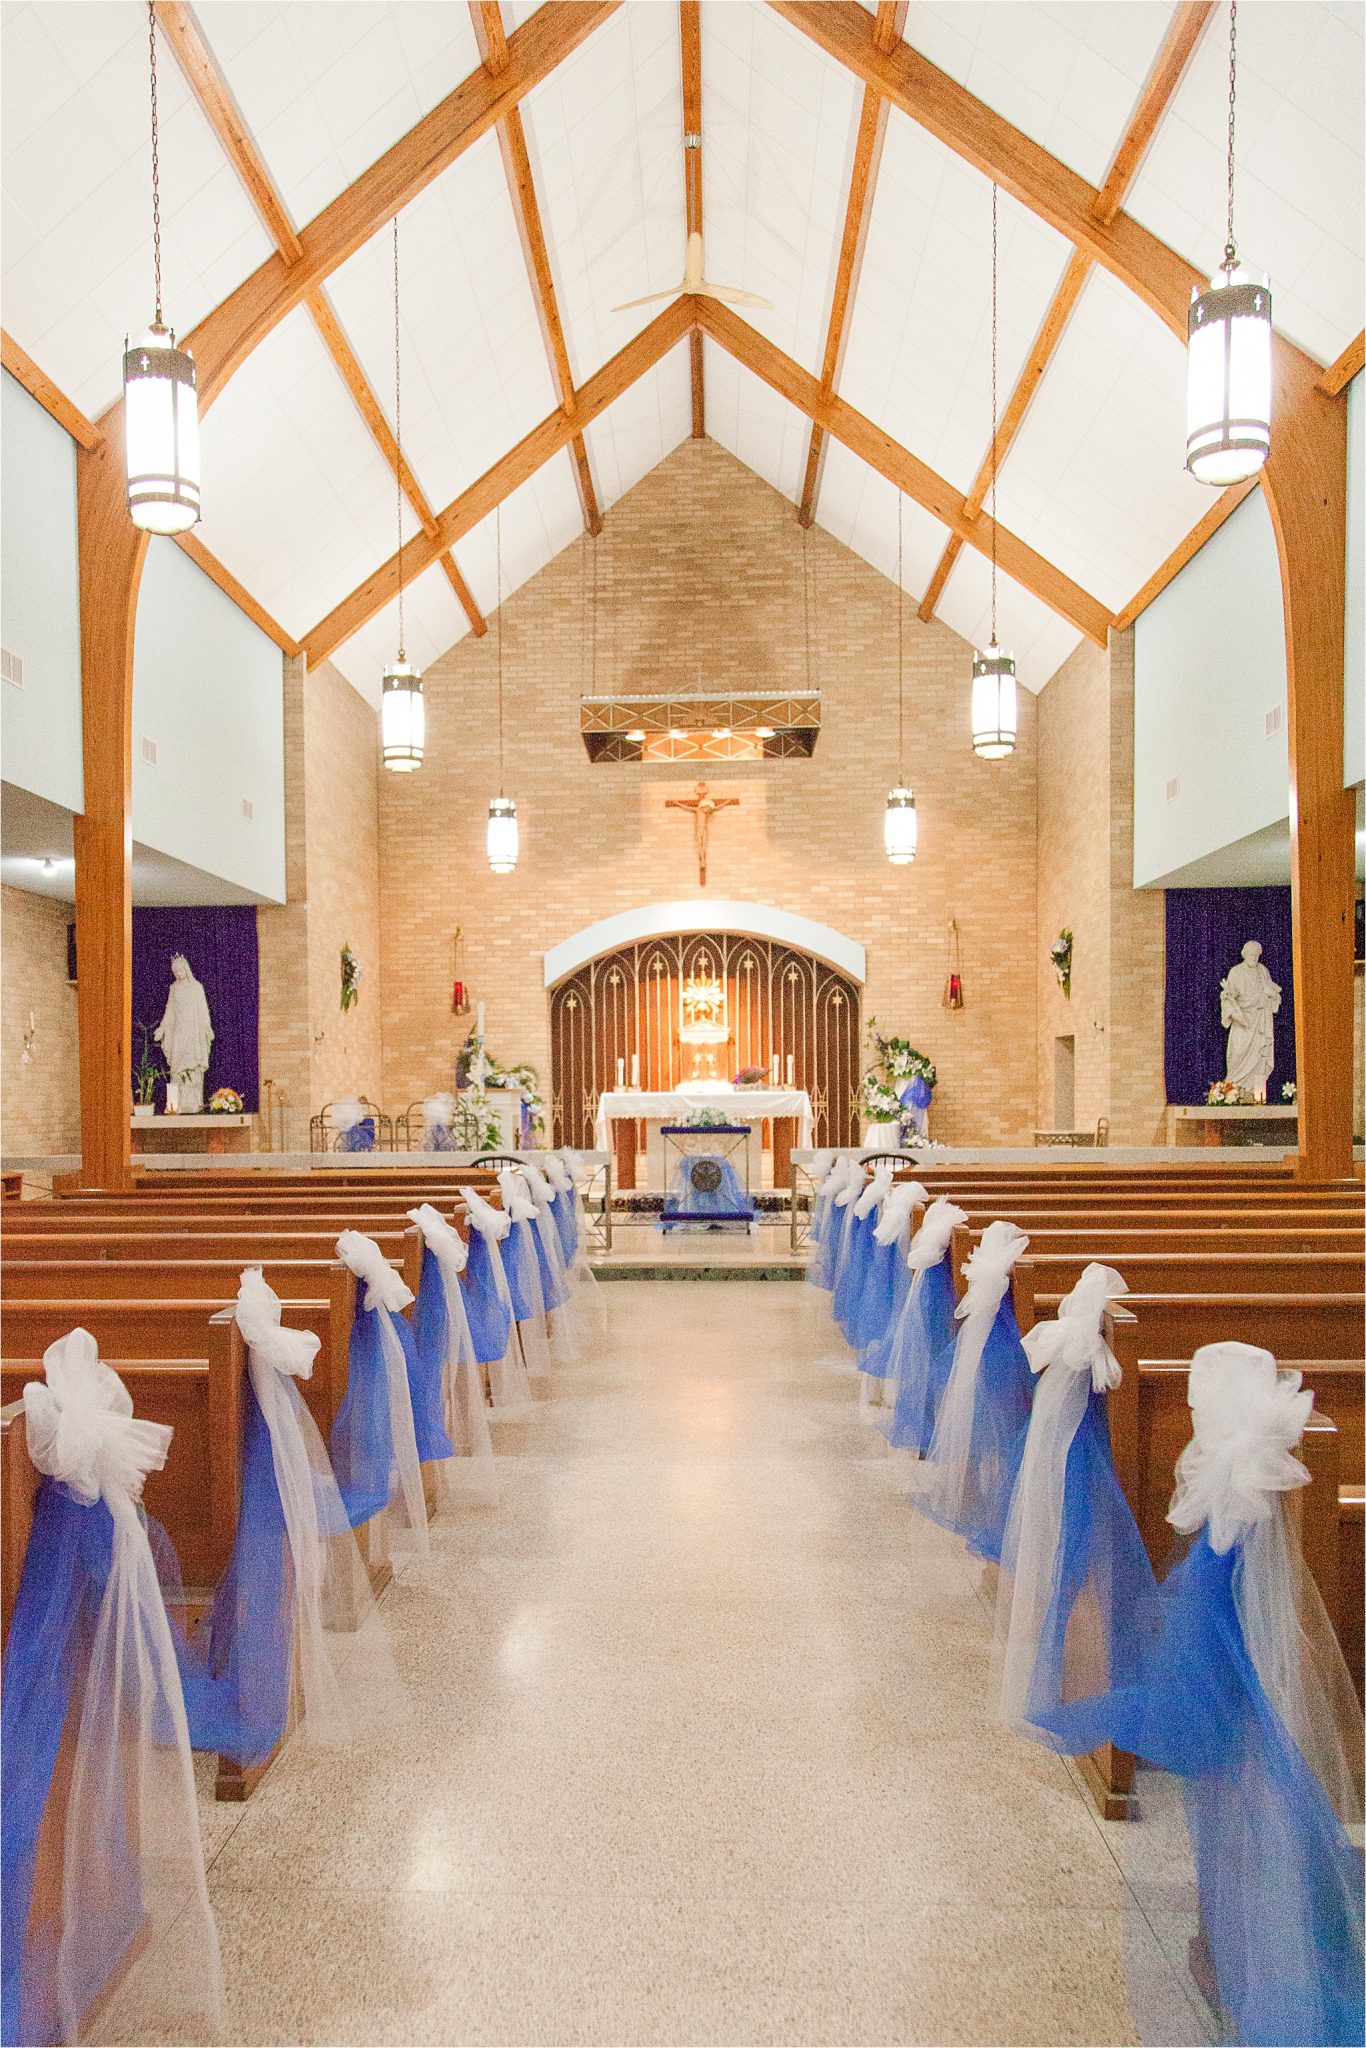 Carmelite Monastery-Mobile Alabama-Alabama wedding venues-Catholic Wedding-blue tulle-catholic church-religious wedding-high ceilings